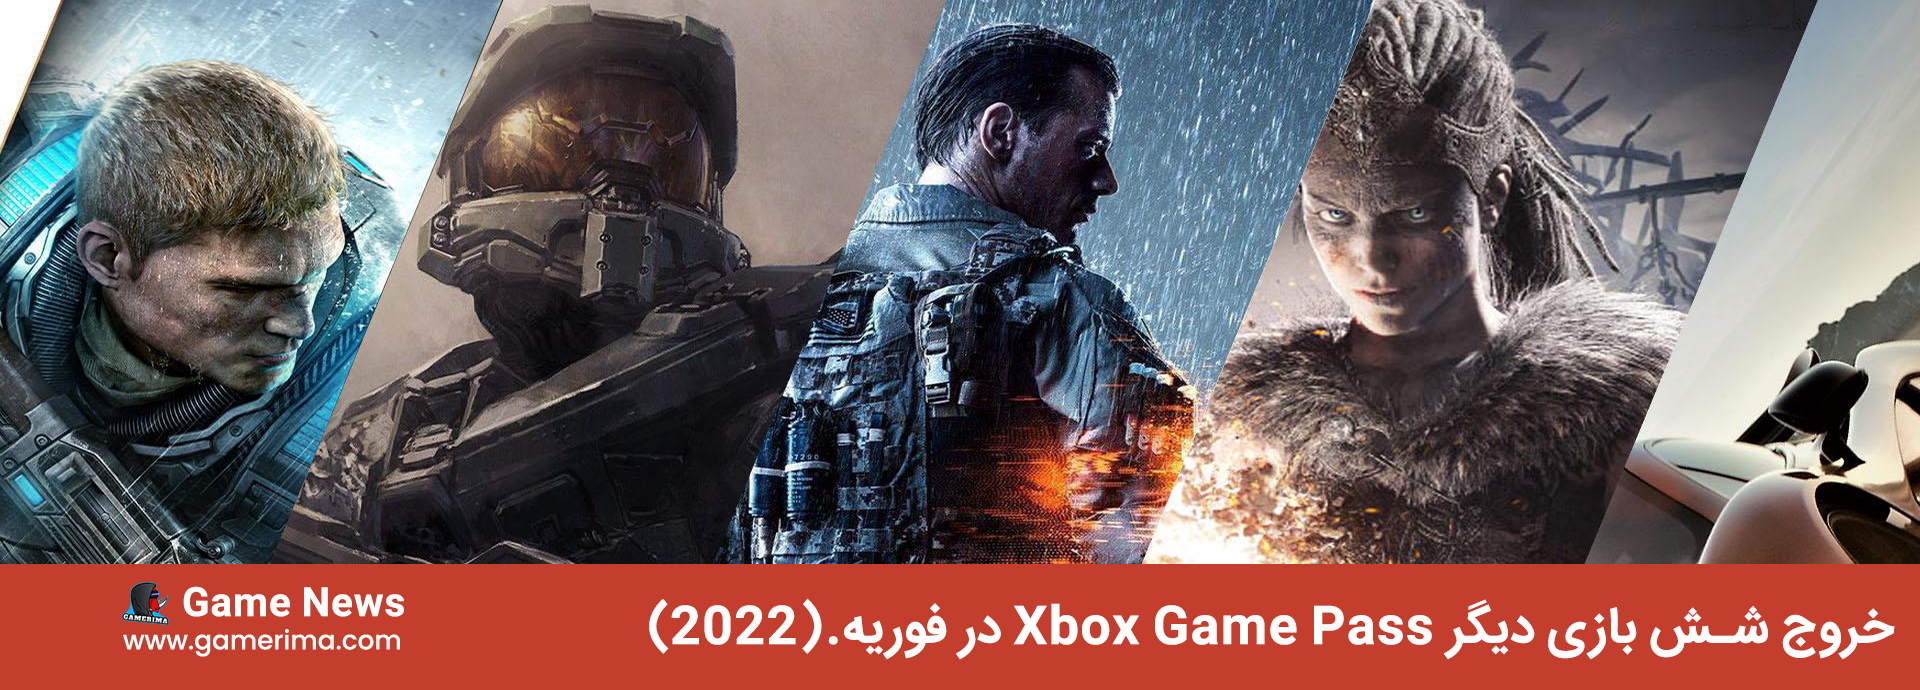 خروج شش بازی دیگر Xbox Game Pass در فوریه.(2022)